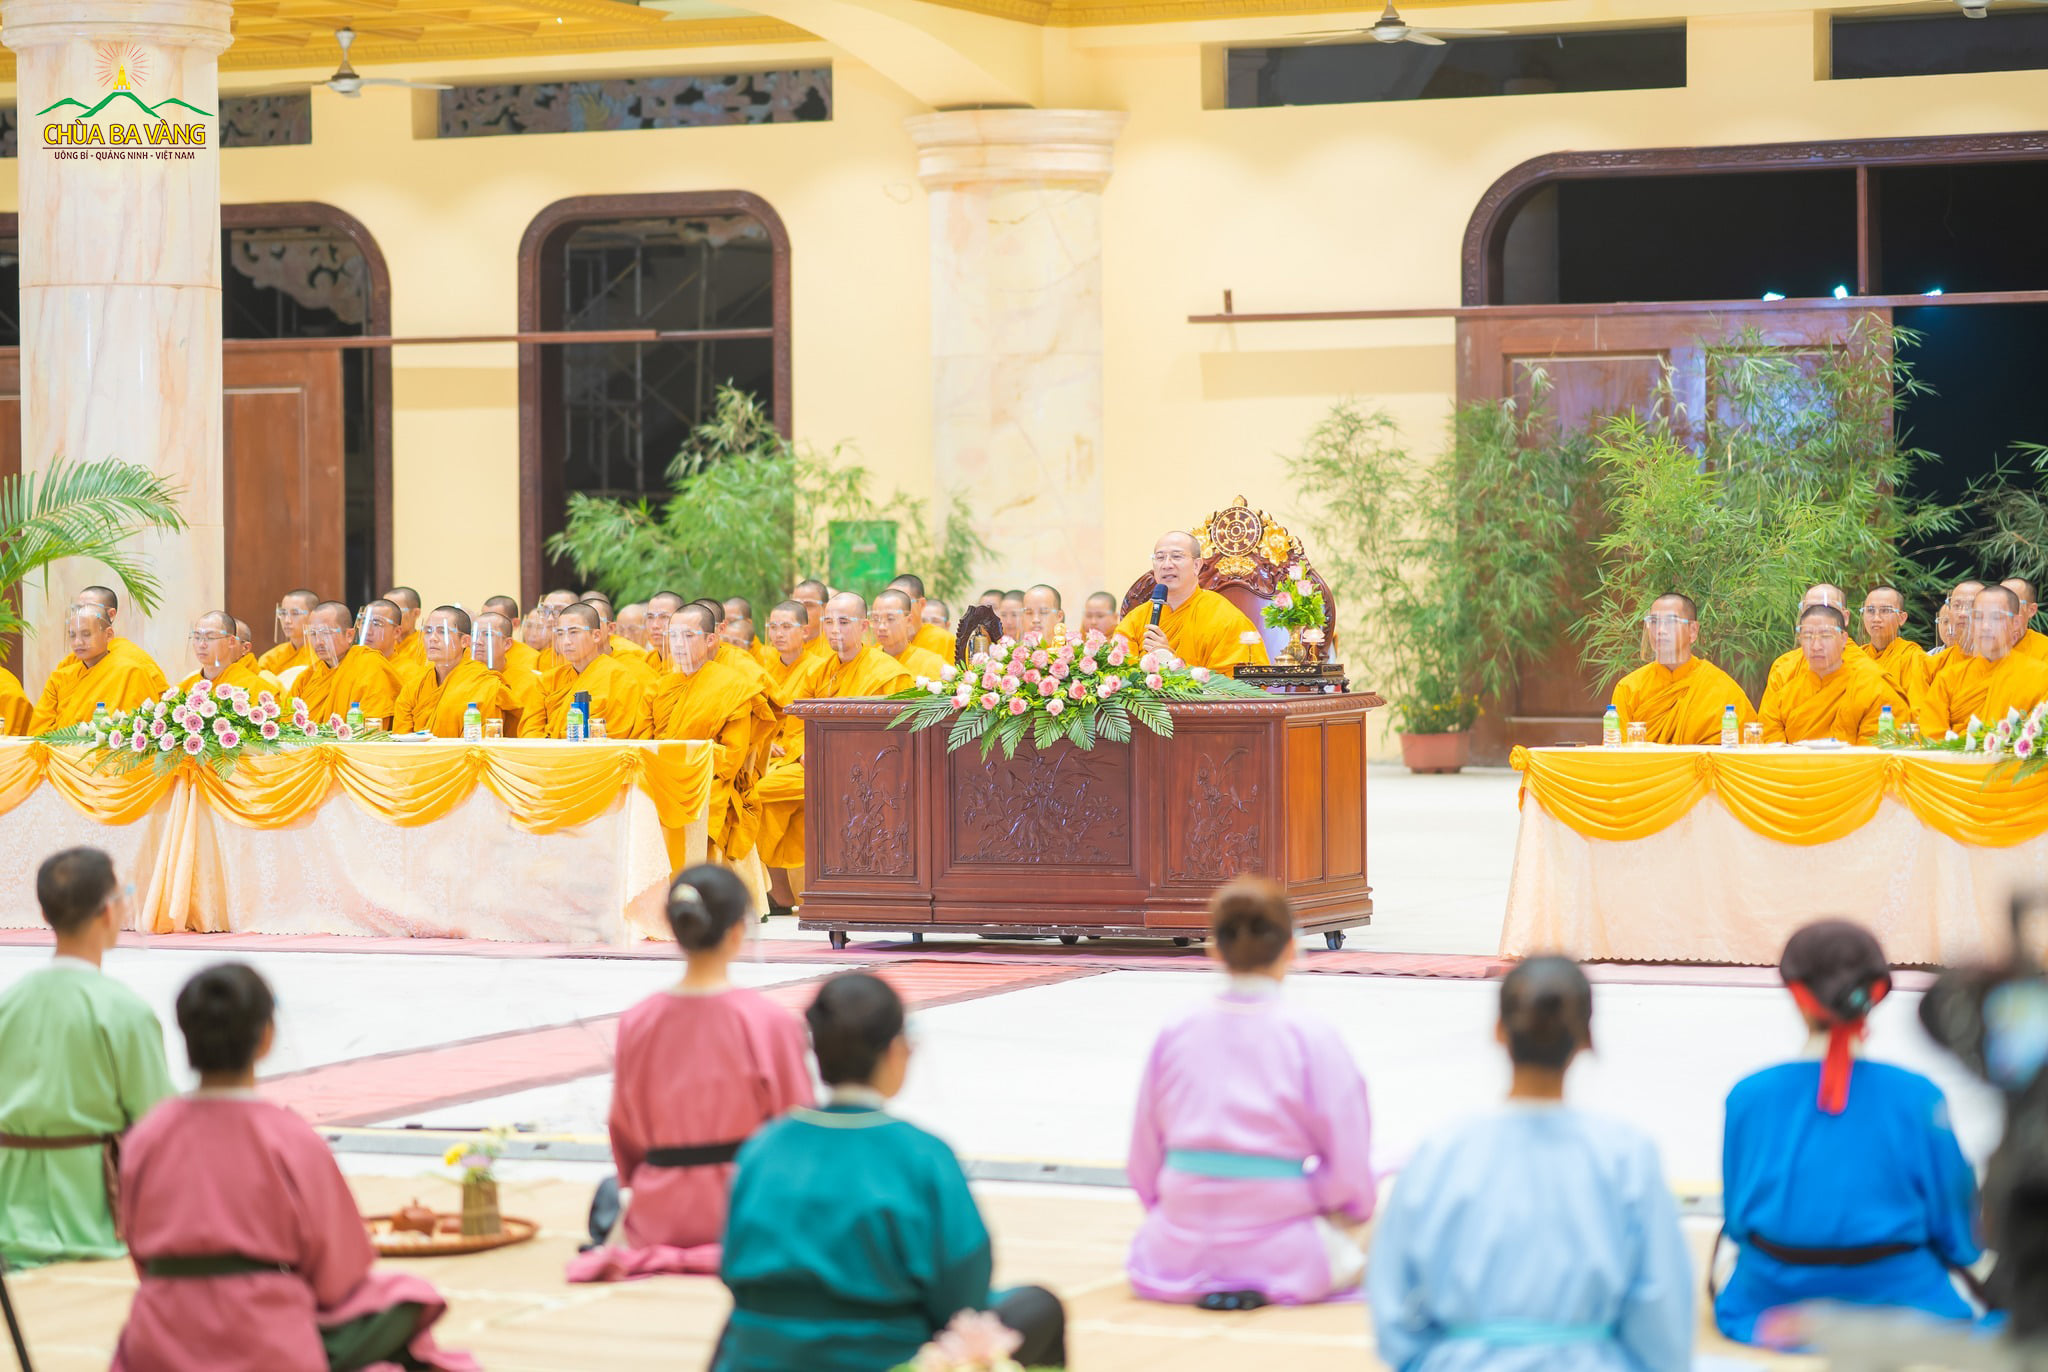 Sư Phụ từ bi ban bố những lời đạo từ ý nghĩa cho toàn thể đại chúng, giúp hàng hậu học ôn lại những điều đặc biệt trong cuộc đời của Đức Phật hoàng và tri ân tới sự giáng sinh của Ngài